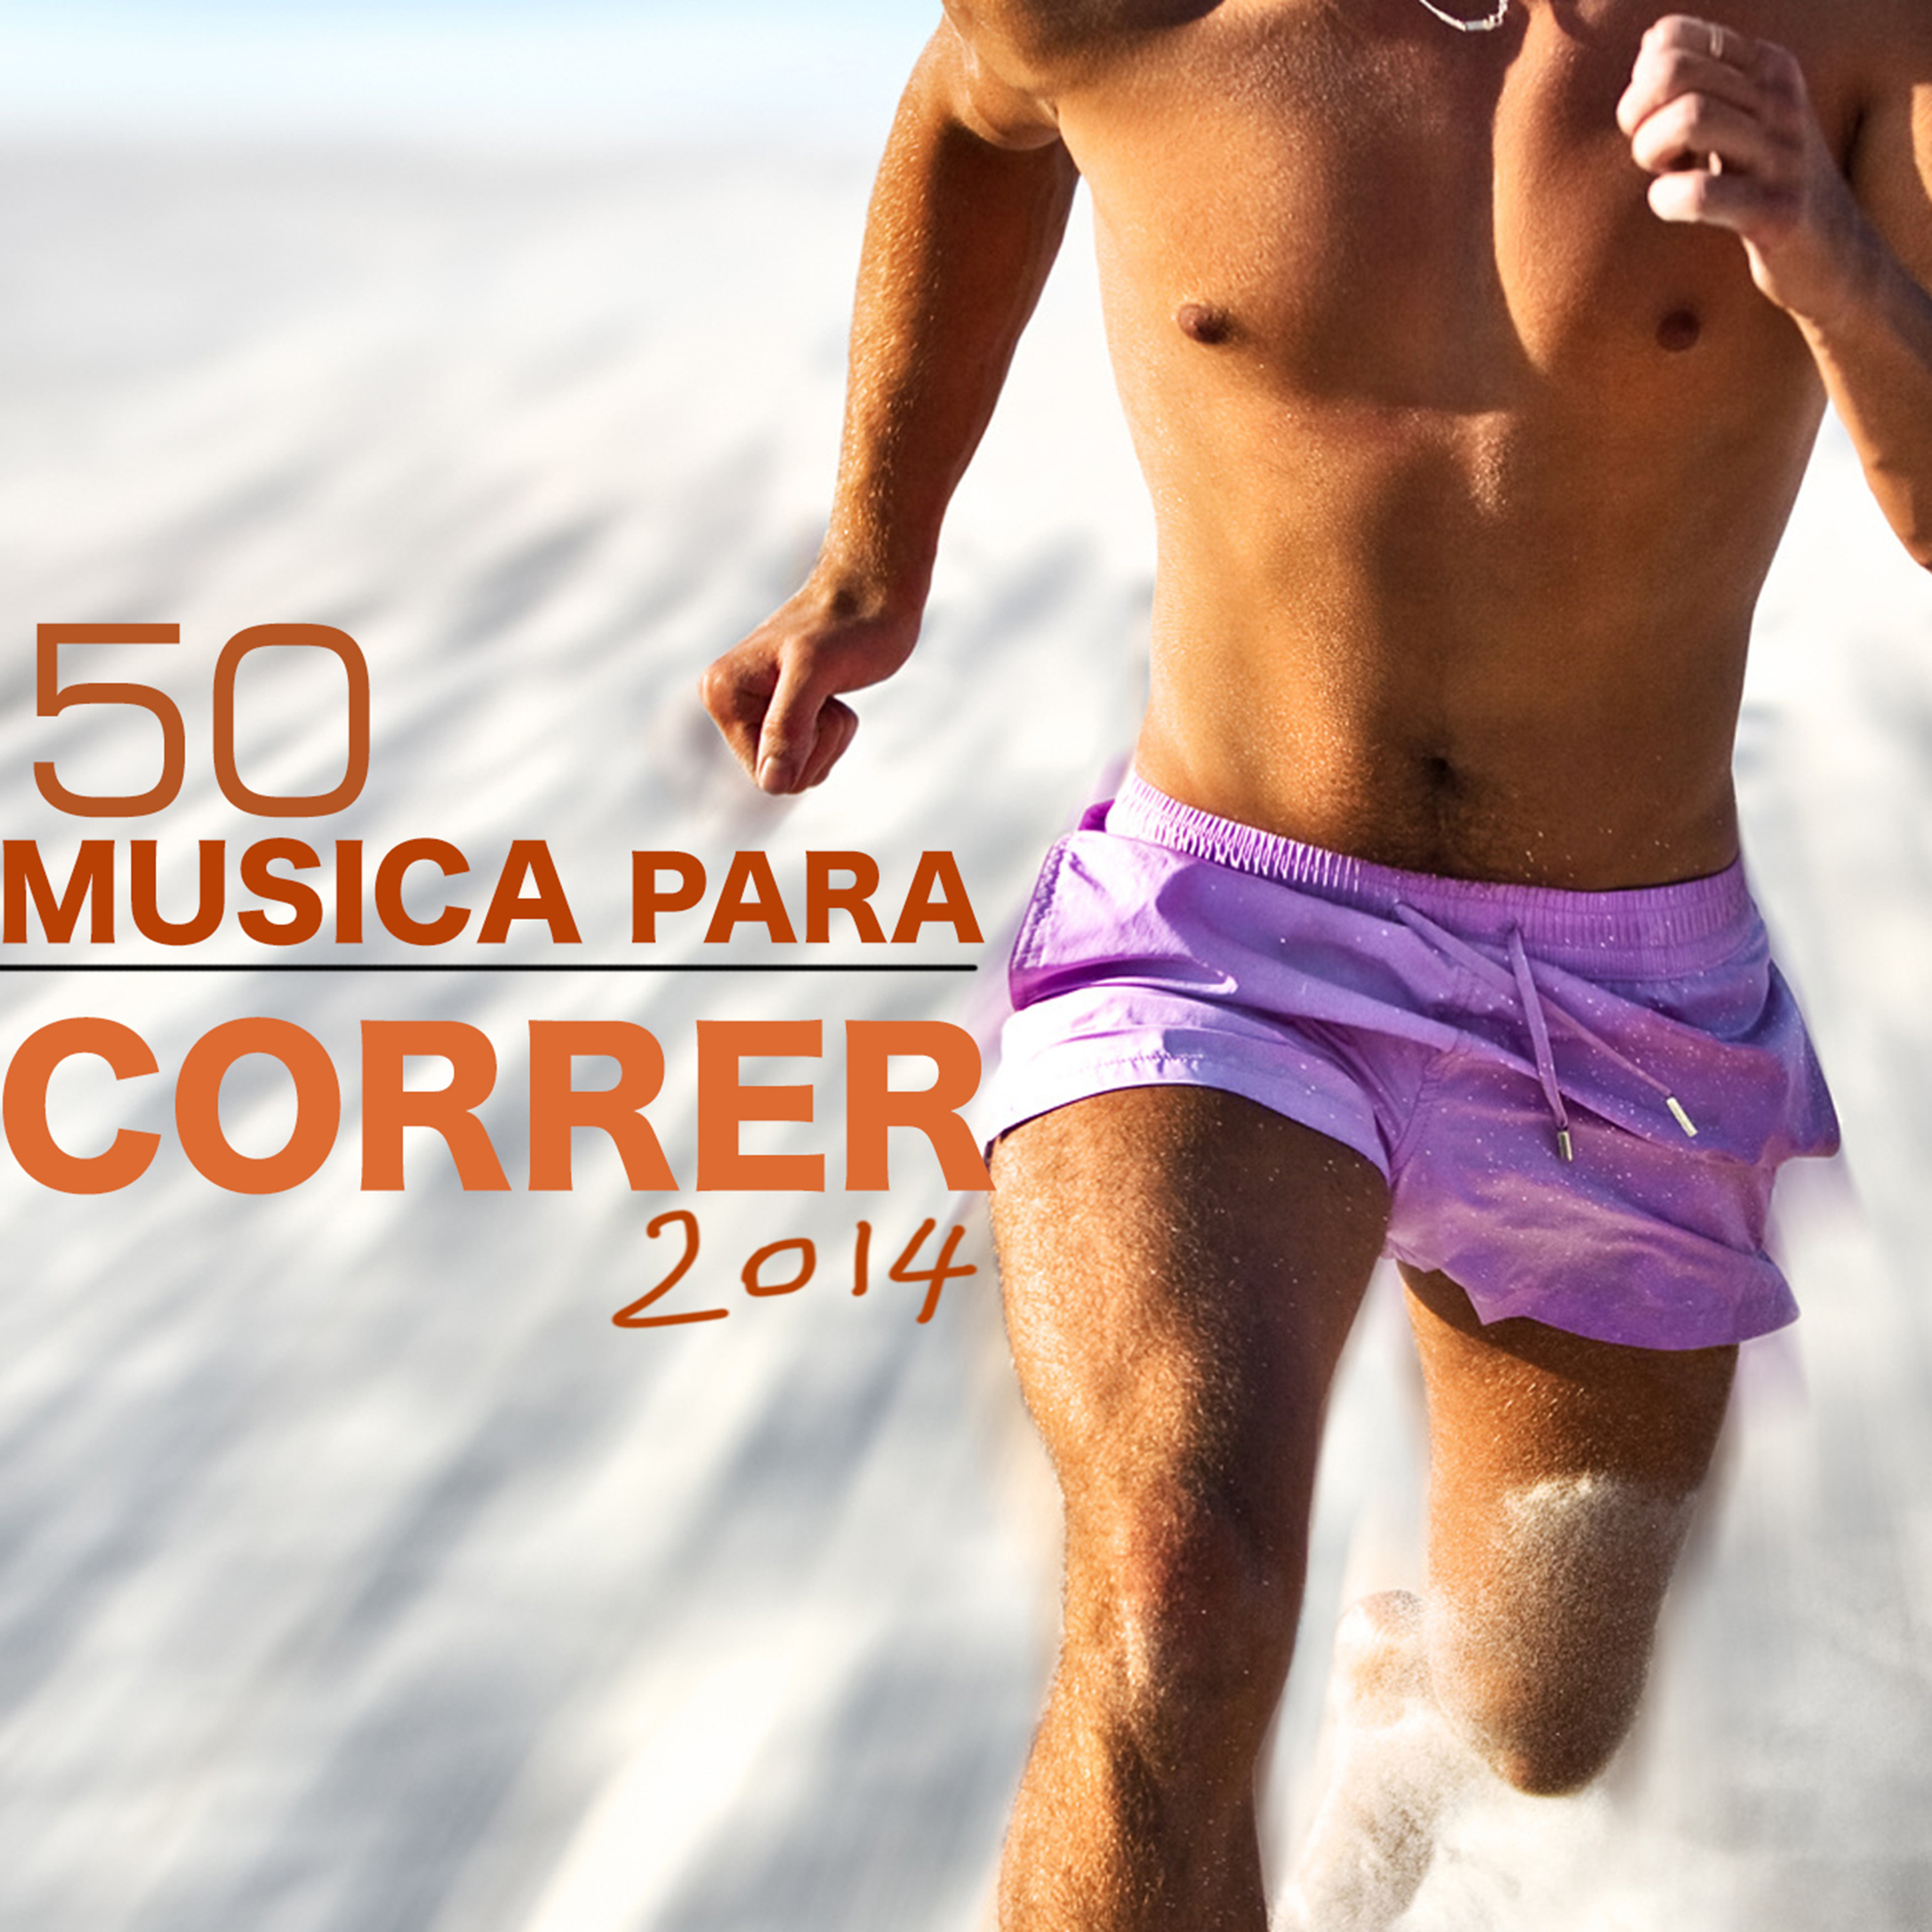 50 Musica para Correr 2014 - Las Mejores Canciones para Correr del Verano 2014